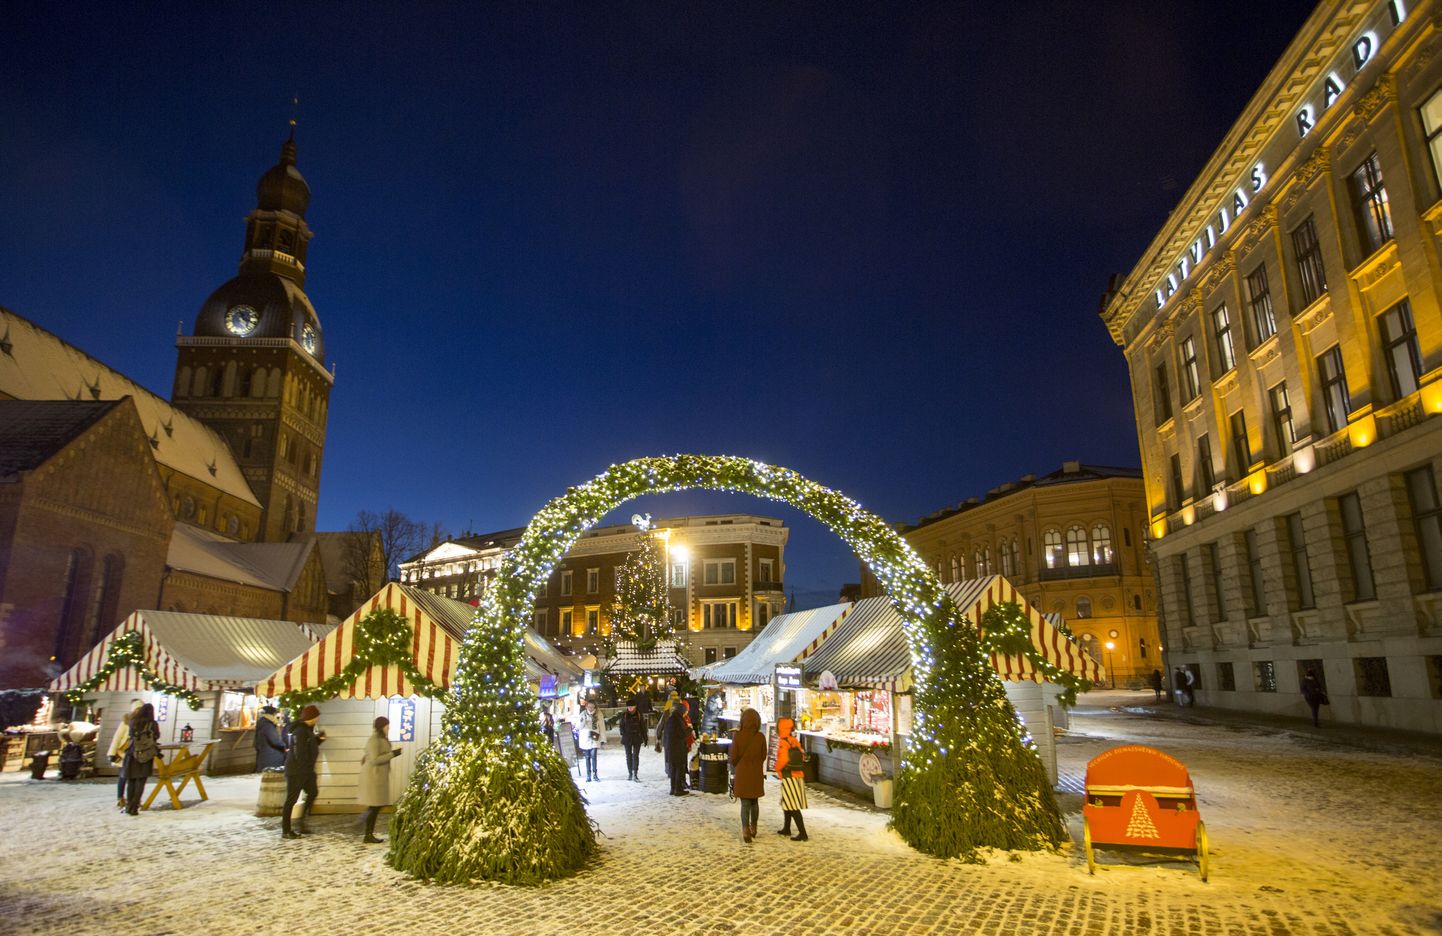 Арка входа на рождественский рынок у Домского собора - обряд перехода в сказочный мир.